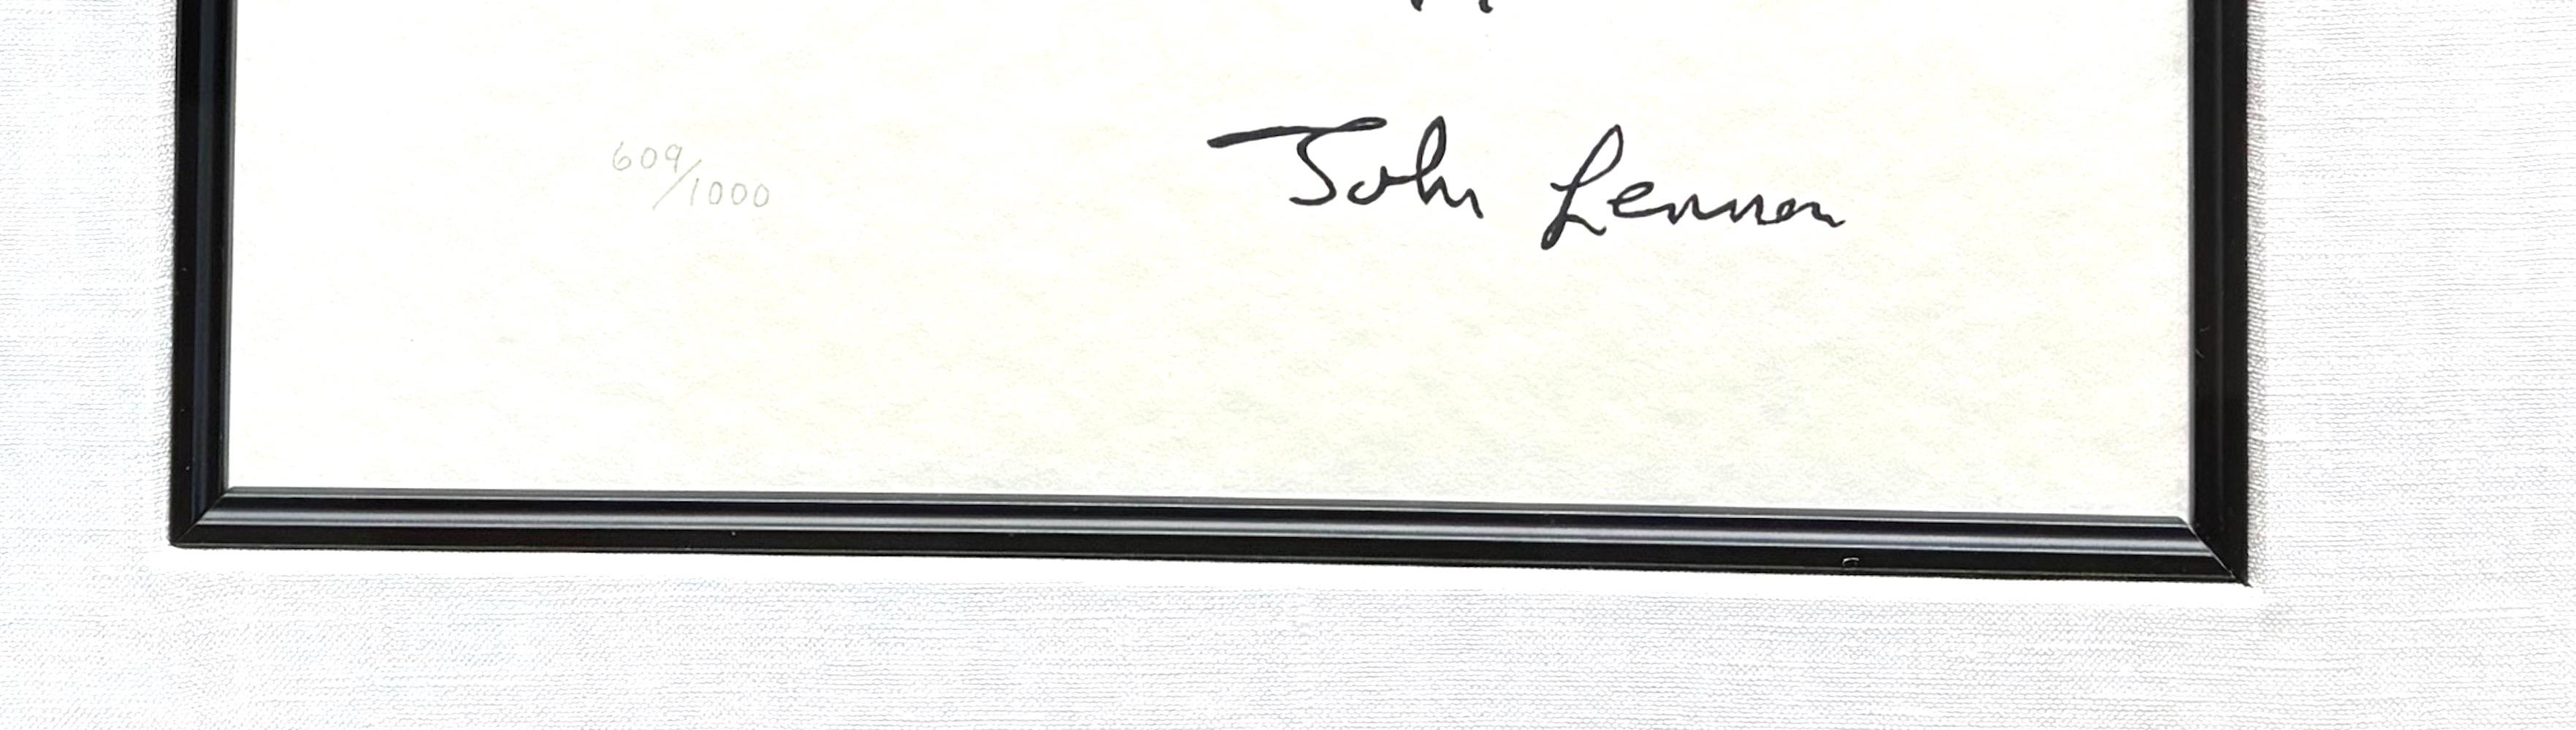 « Dear Prudence », chanson en édition limitée écrite à la main - Print de John Lennon